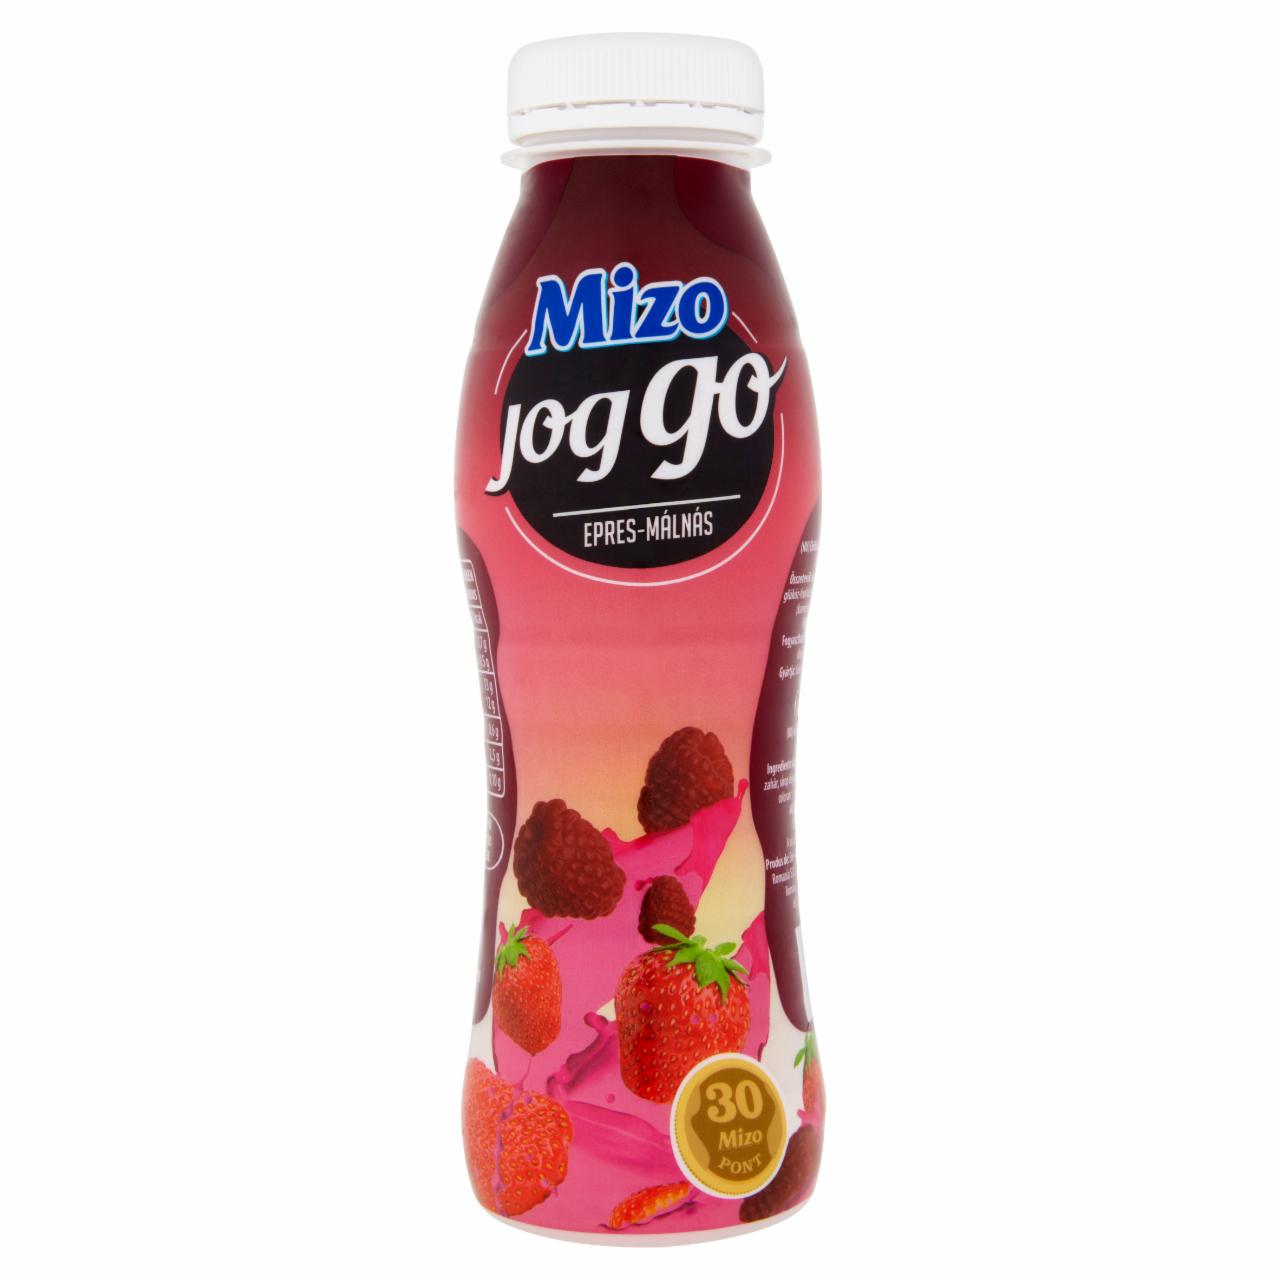 Képek - Mizo Joggo epres-málnás joghurt ital 330 ml